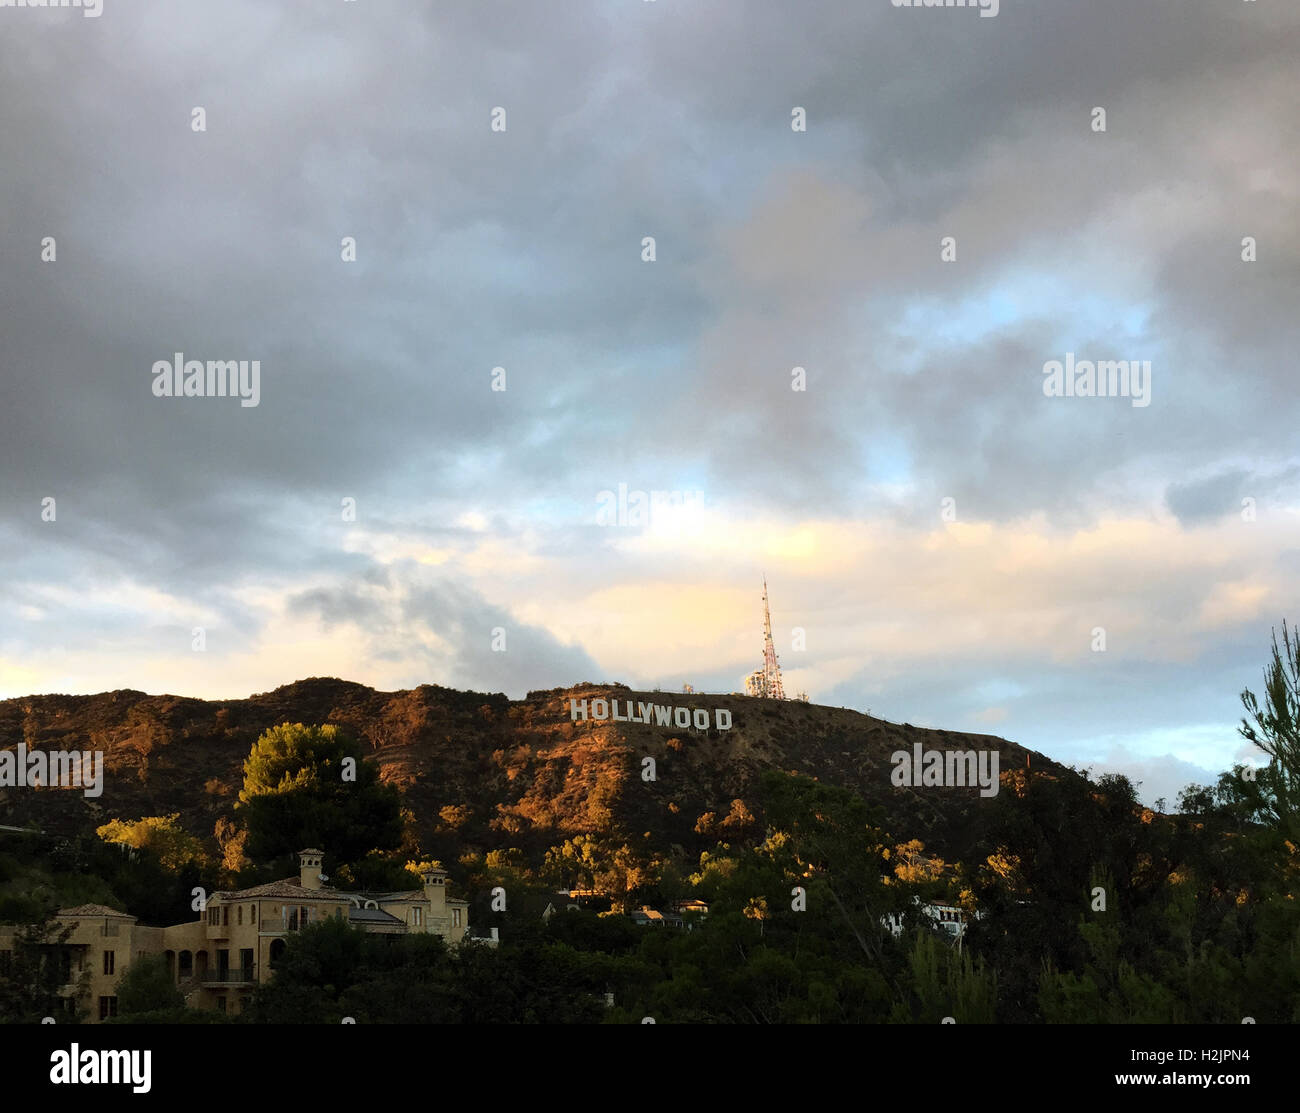 La famosa insegna di Hollywood con drammatica sky in colline di Los Angeles, CA Foto Stock